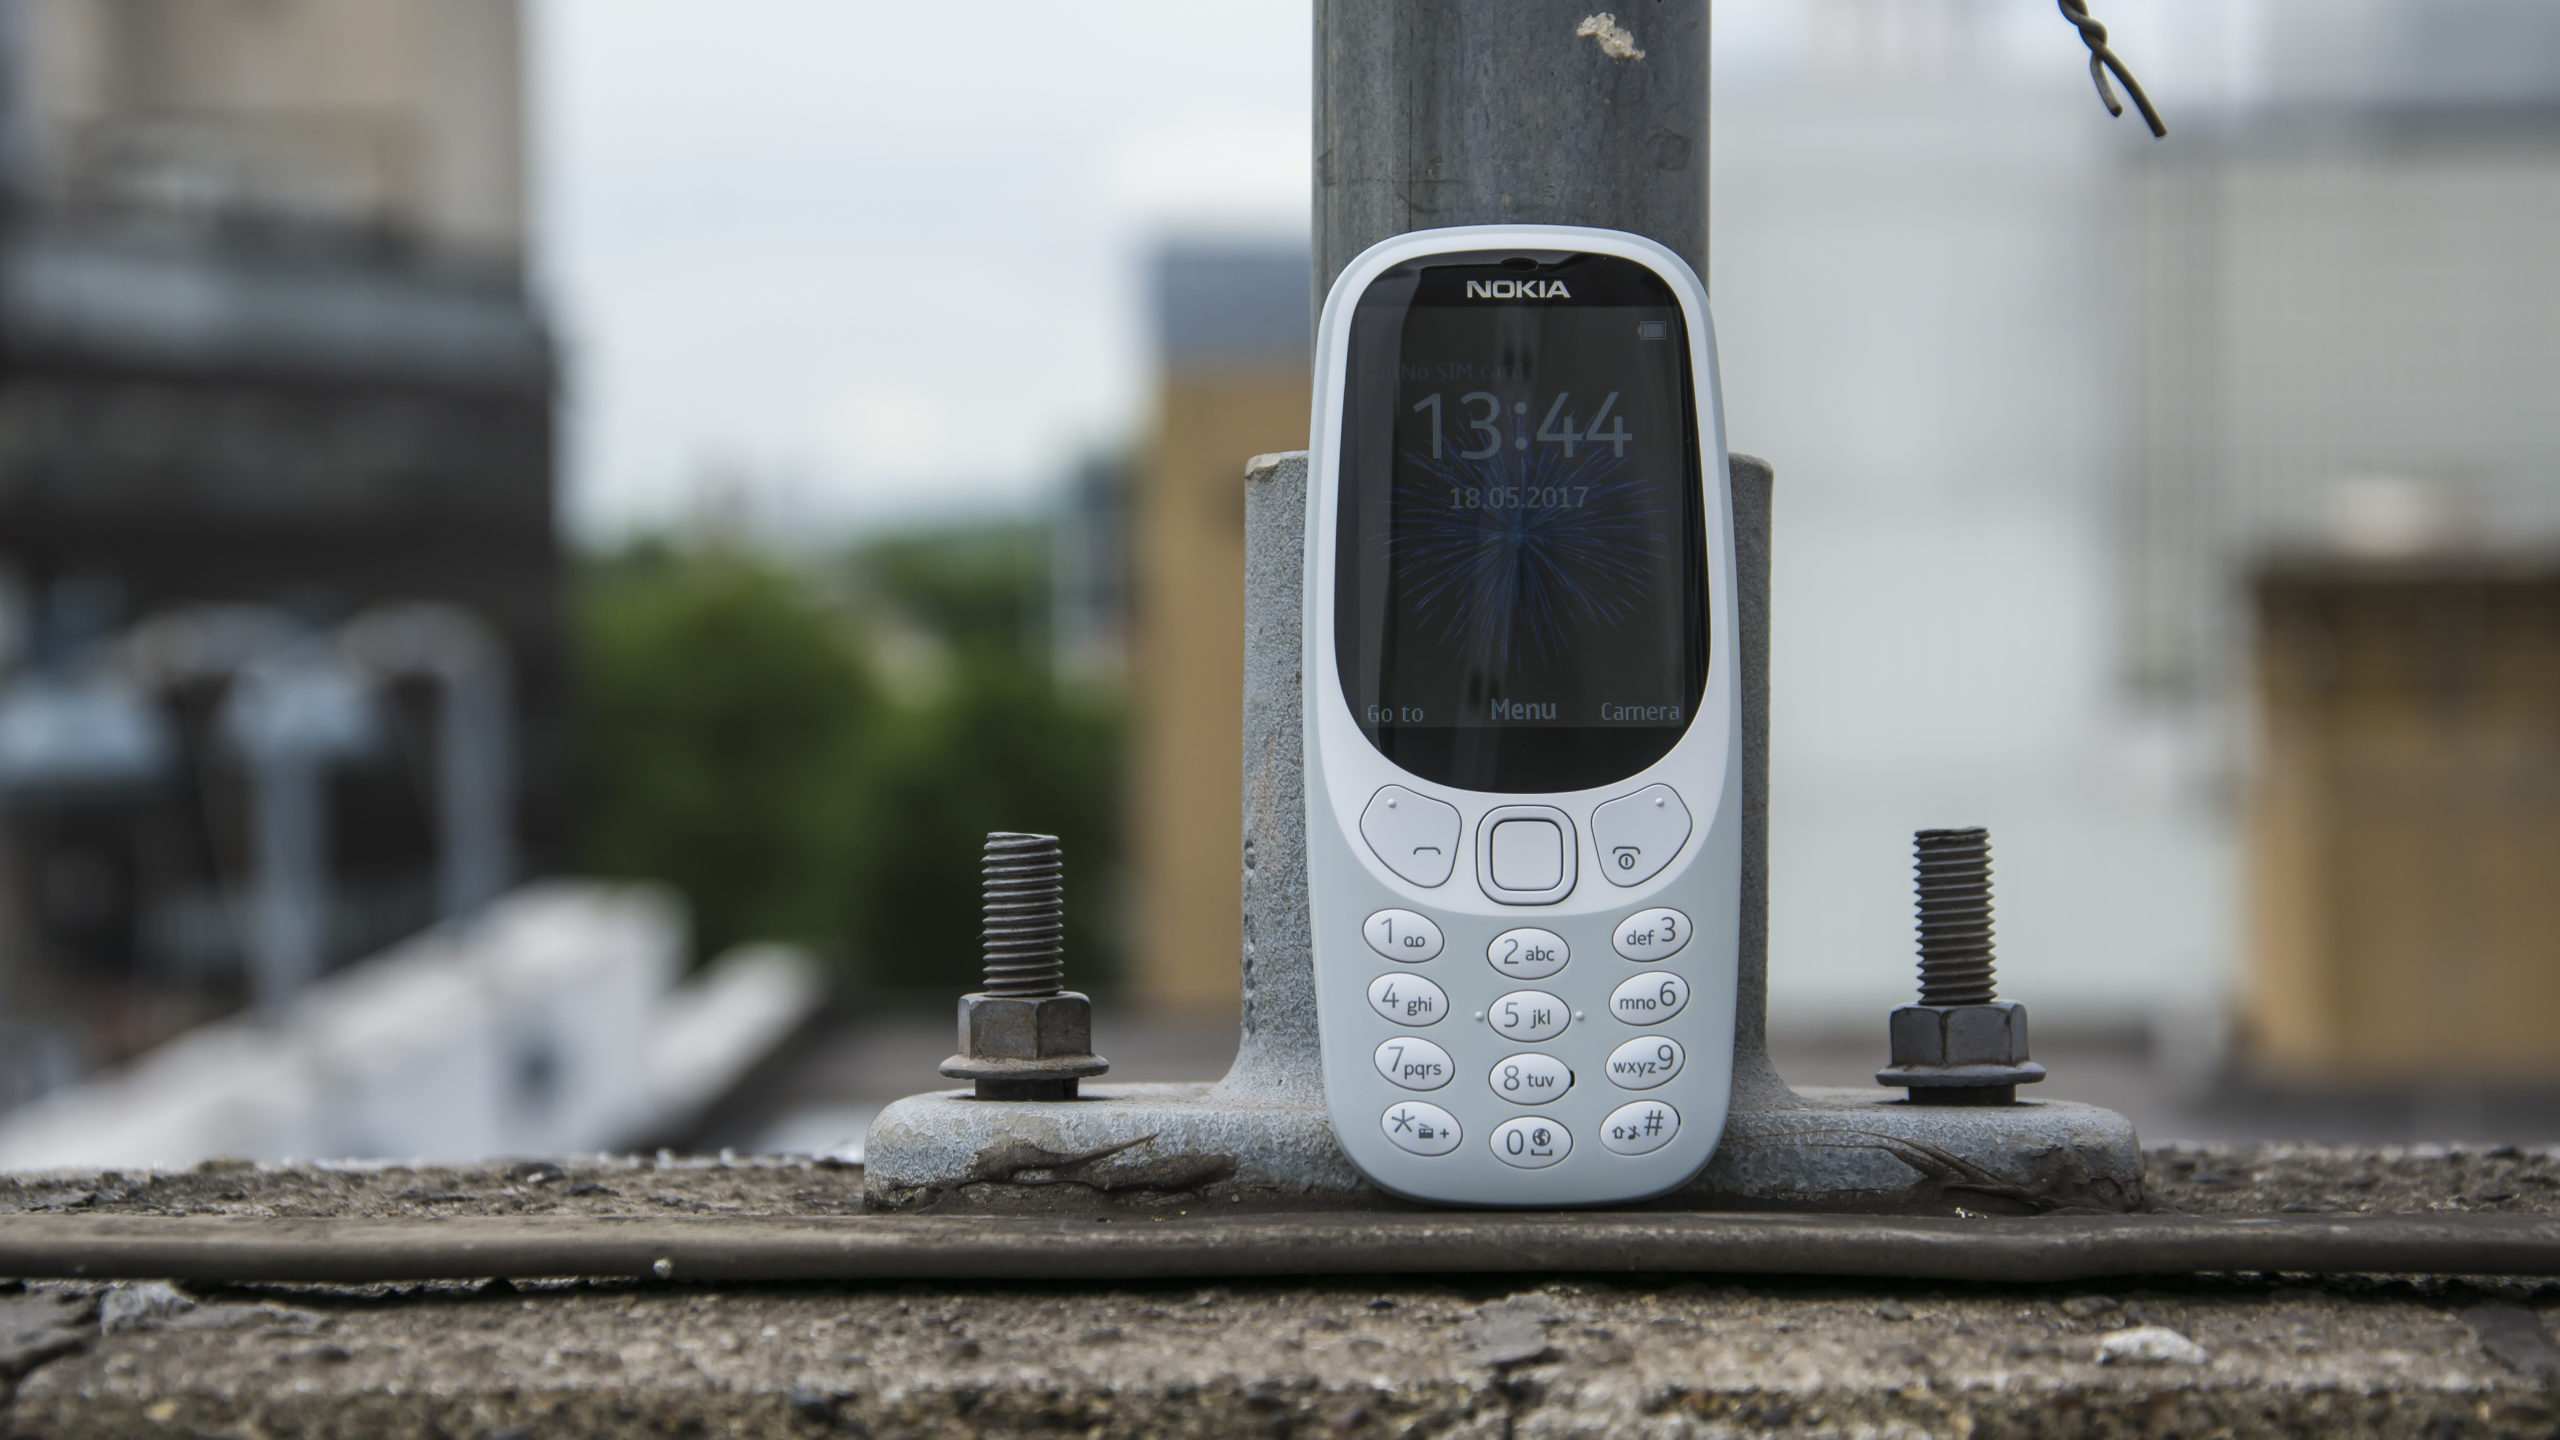 Đánh giá Nokia 3310: Nếu bạn muốn biết thêm về đánh giá của người dùng về chiếc điện thoại Nokia 3310, hãy xem hình ảnh liên quan để tìm hiểu thông tin chi tiết và đáng tin cậy nhất.